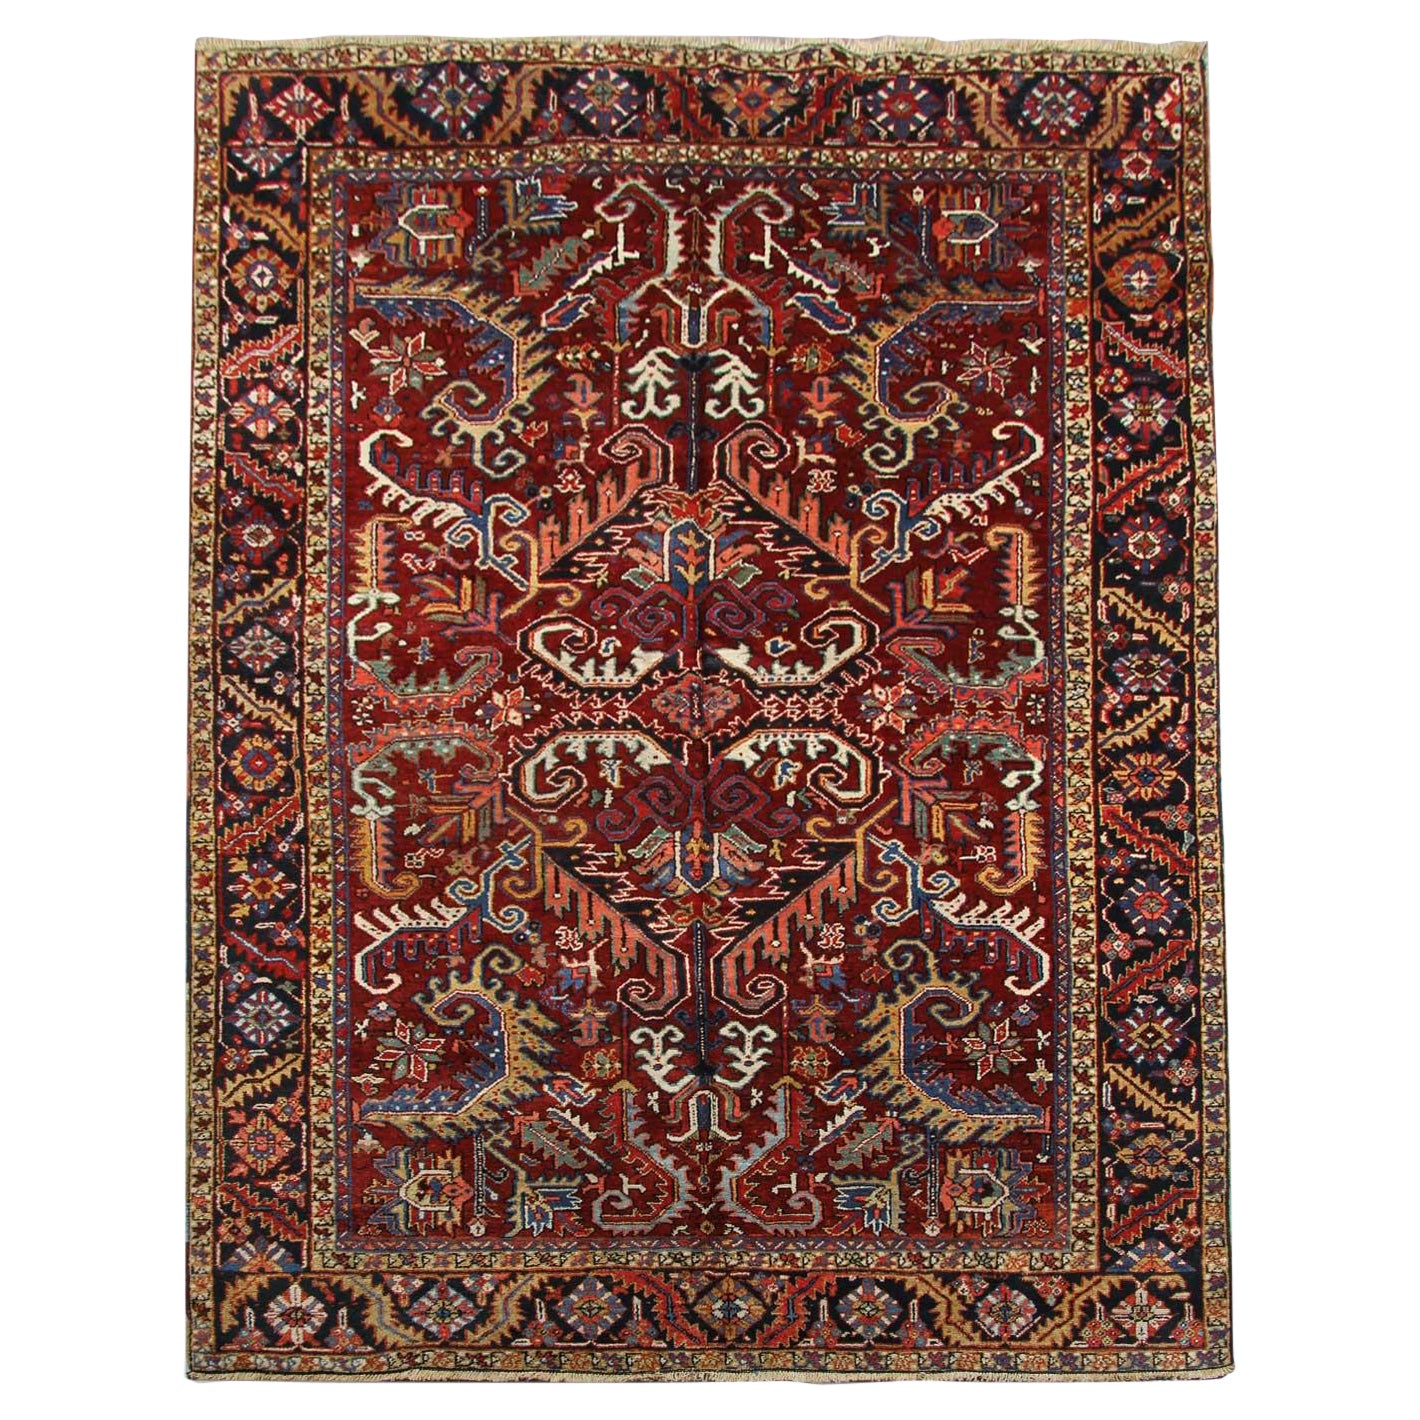 Handgefertigter Teppich Rost Orientalischer Teppich Geometrischer antiker Wollteppich